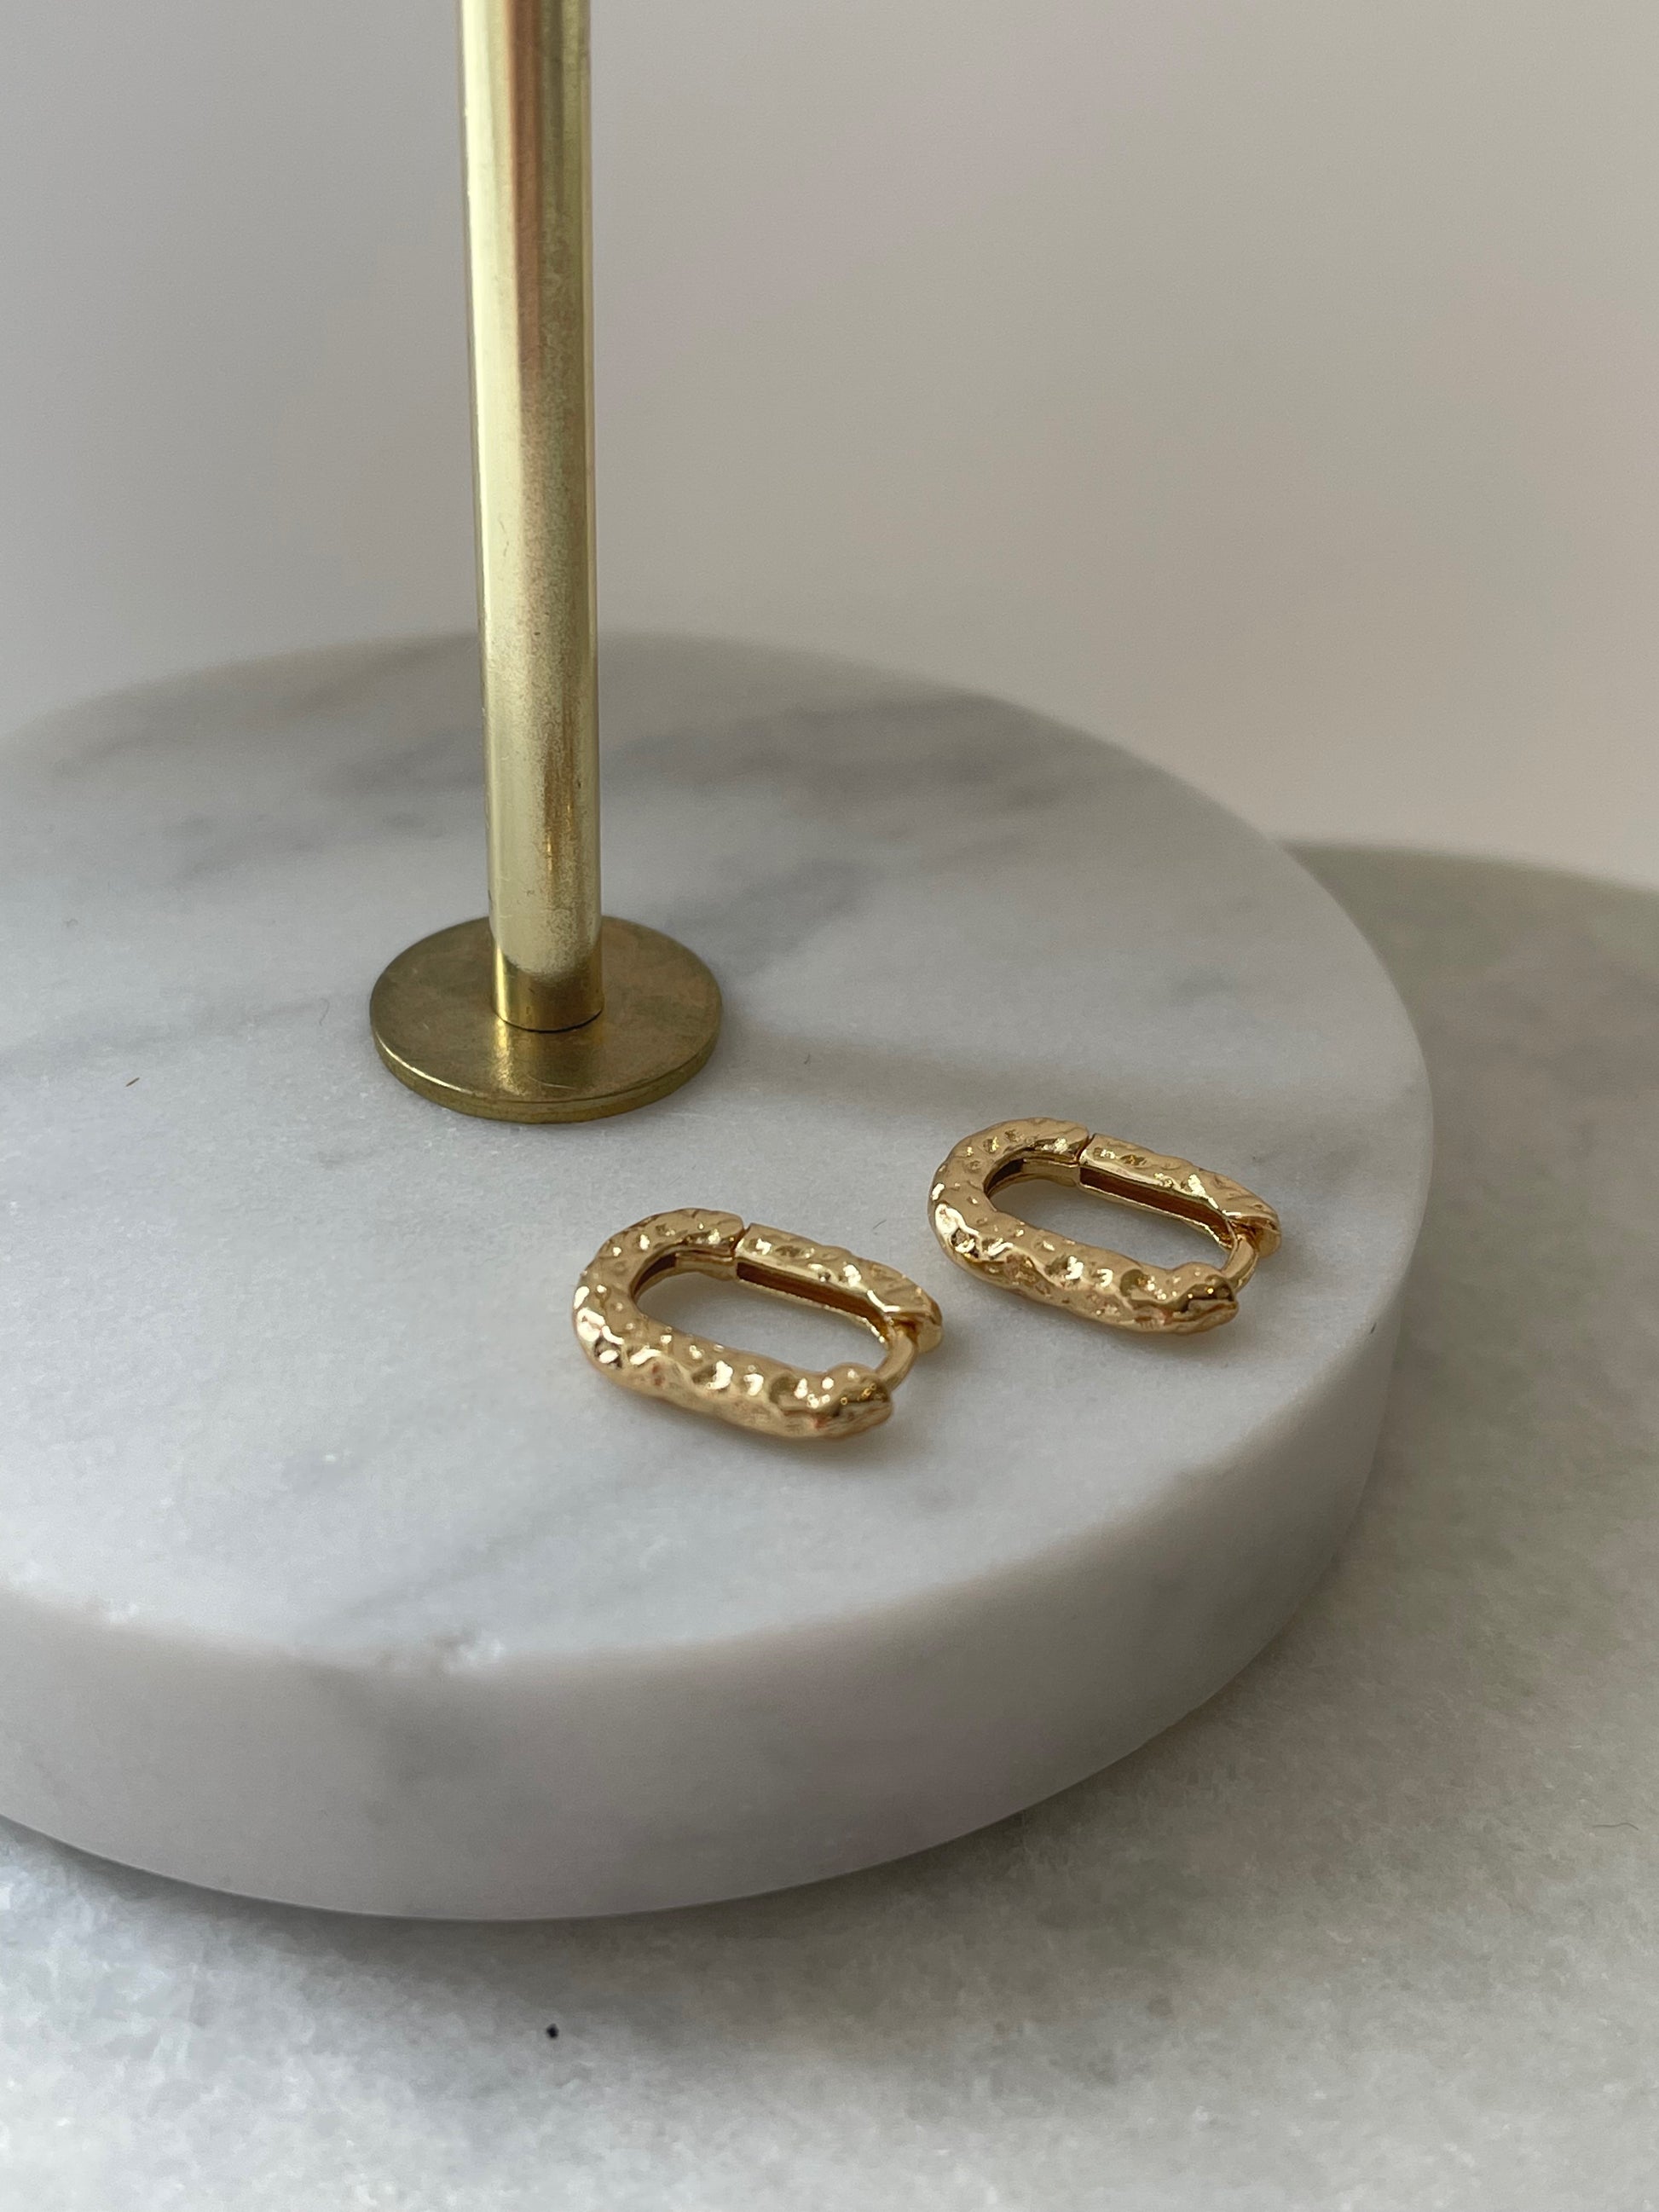 Hailie øreringe i guld i et unikt og råt design.  Ringen er i S925 sterling sølv og guldbelagt med 14 karat guld. Unikt design, der virkelig pifter ens look op.  Materiale: S925 sterling sølv, 14 karat guldbelagt Mål: 2 cm